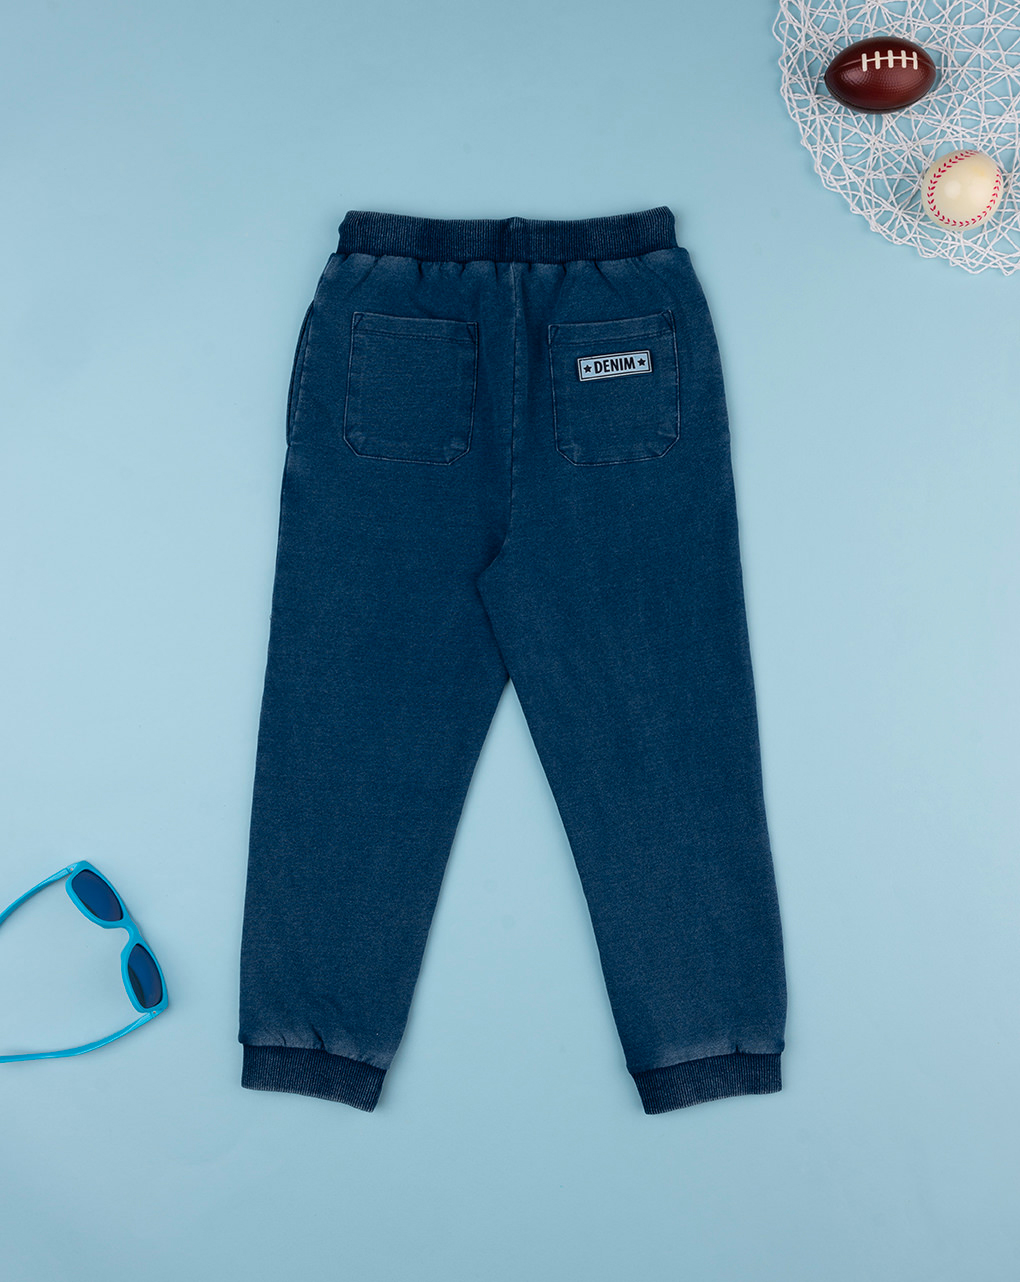 παιδικό τζιν παντελόνι μπλε indigo για αγόρι - Prénatal